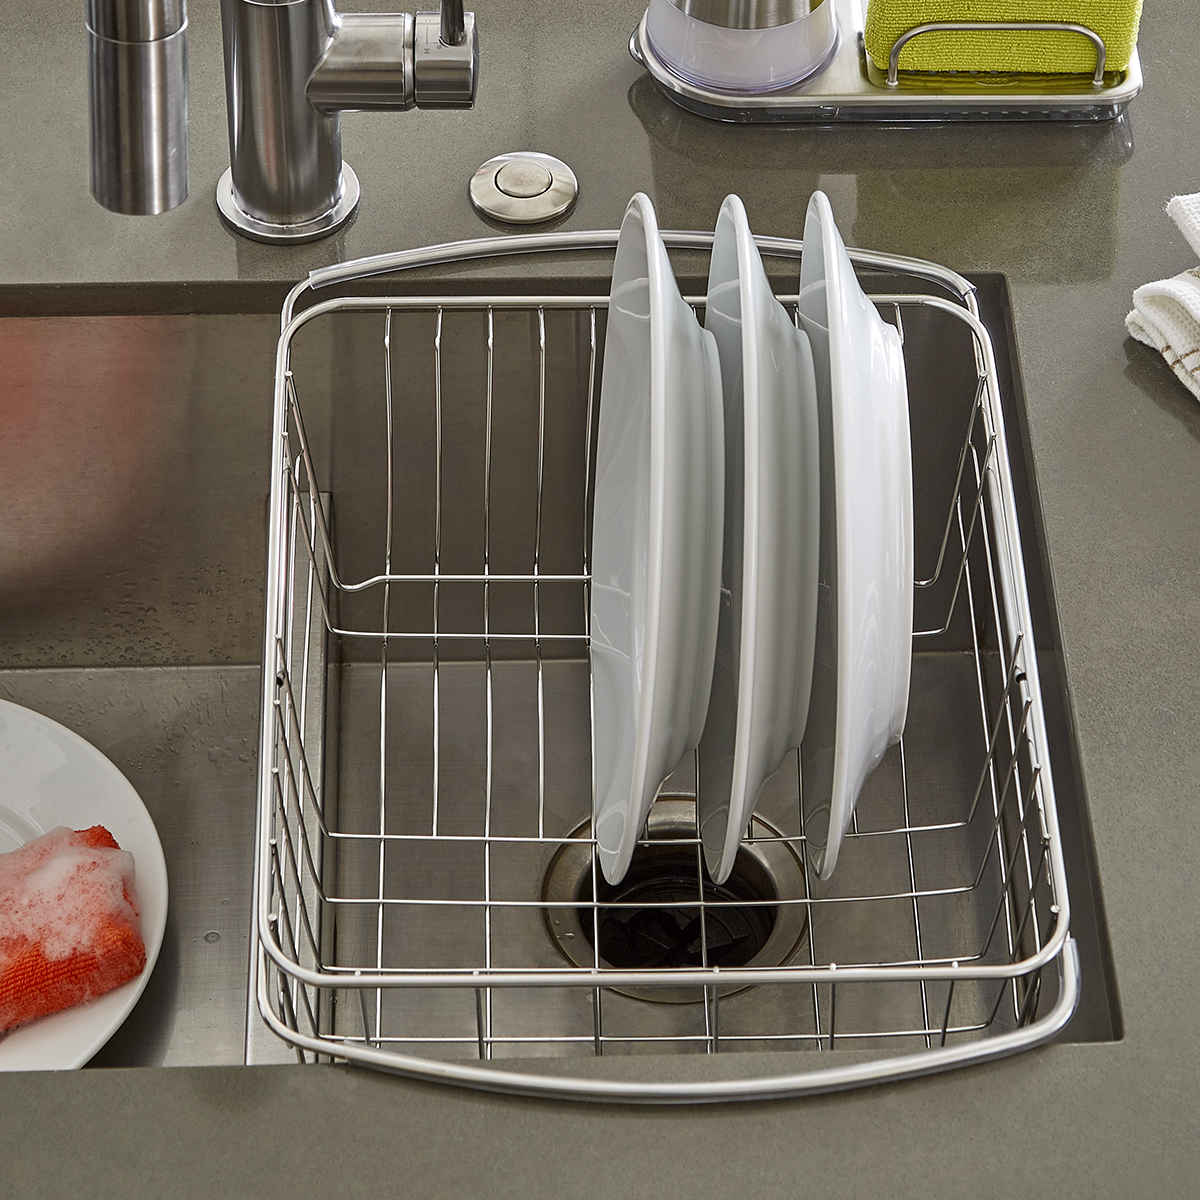 Sinkin Dish Rack- In-Sink Dish Drying Rack